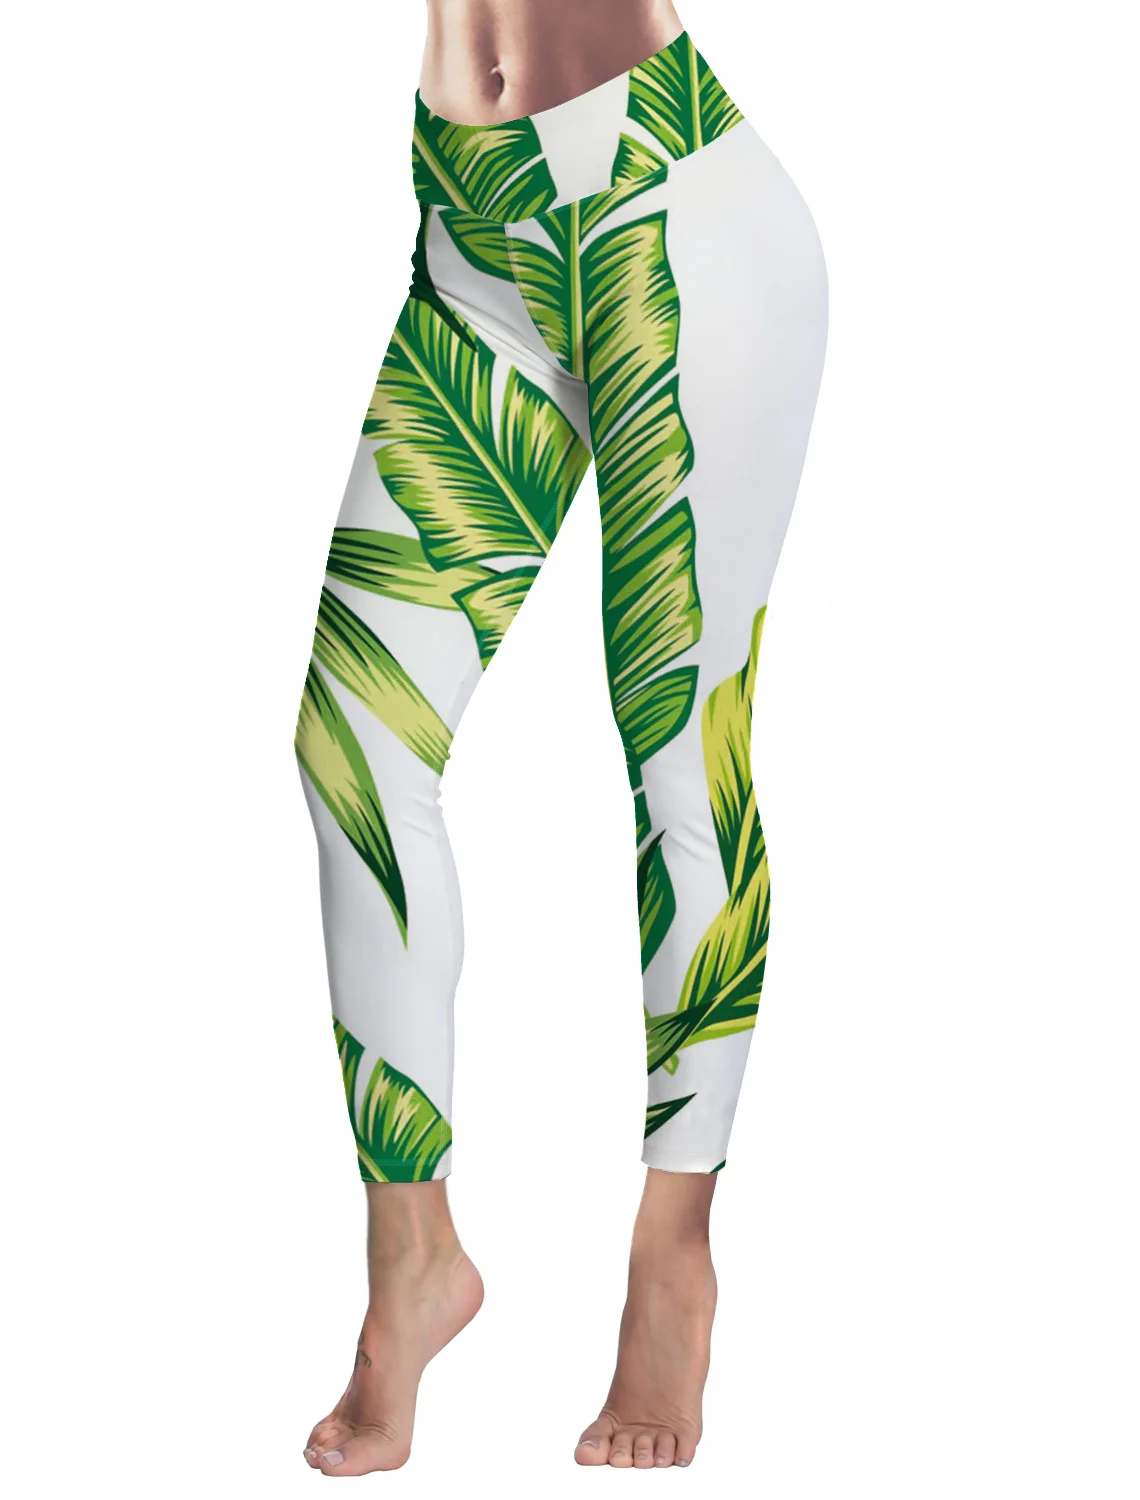 patrocinador molestarse hasta ahora Banana Leaf verde blanco Fresh Fitness Leggings Mujer entrenamiento  pantalones Legging moda culturismo Jeggings Mujer Pantalones - AliExpress  Ropa de mujer